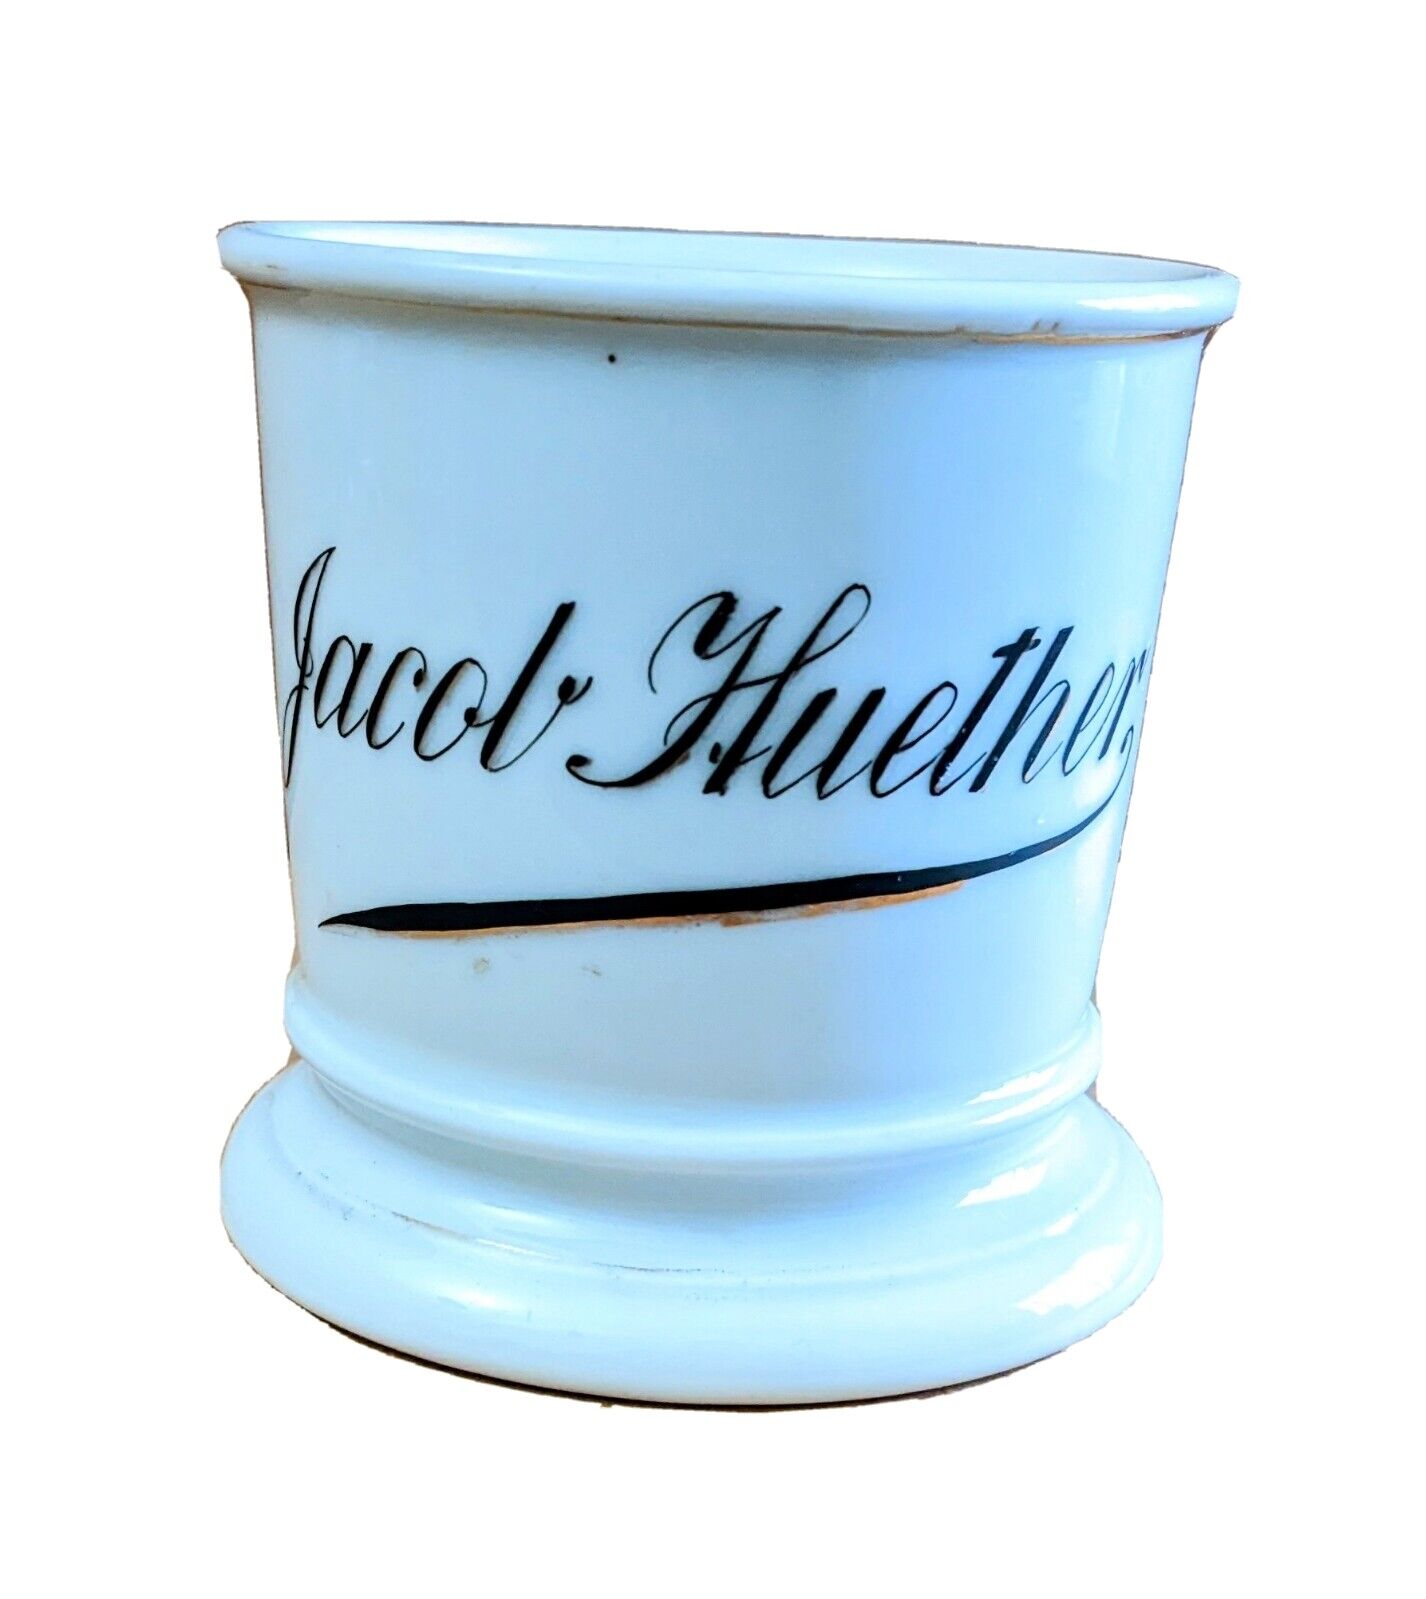 Antique 1880s V x D Austria Occupational Shaving Mug Jacob Huether Porcelain